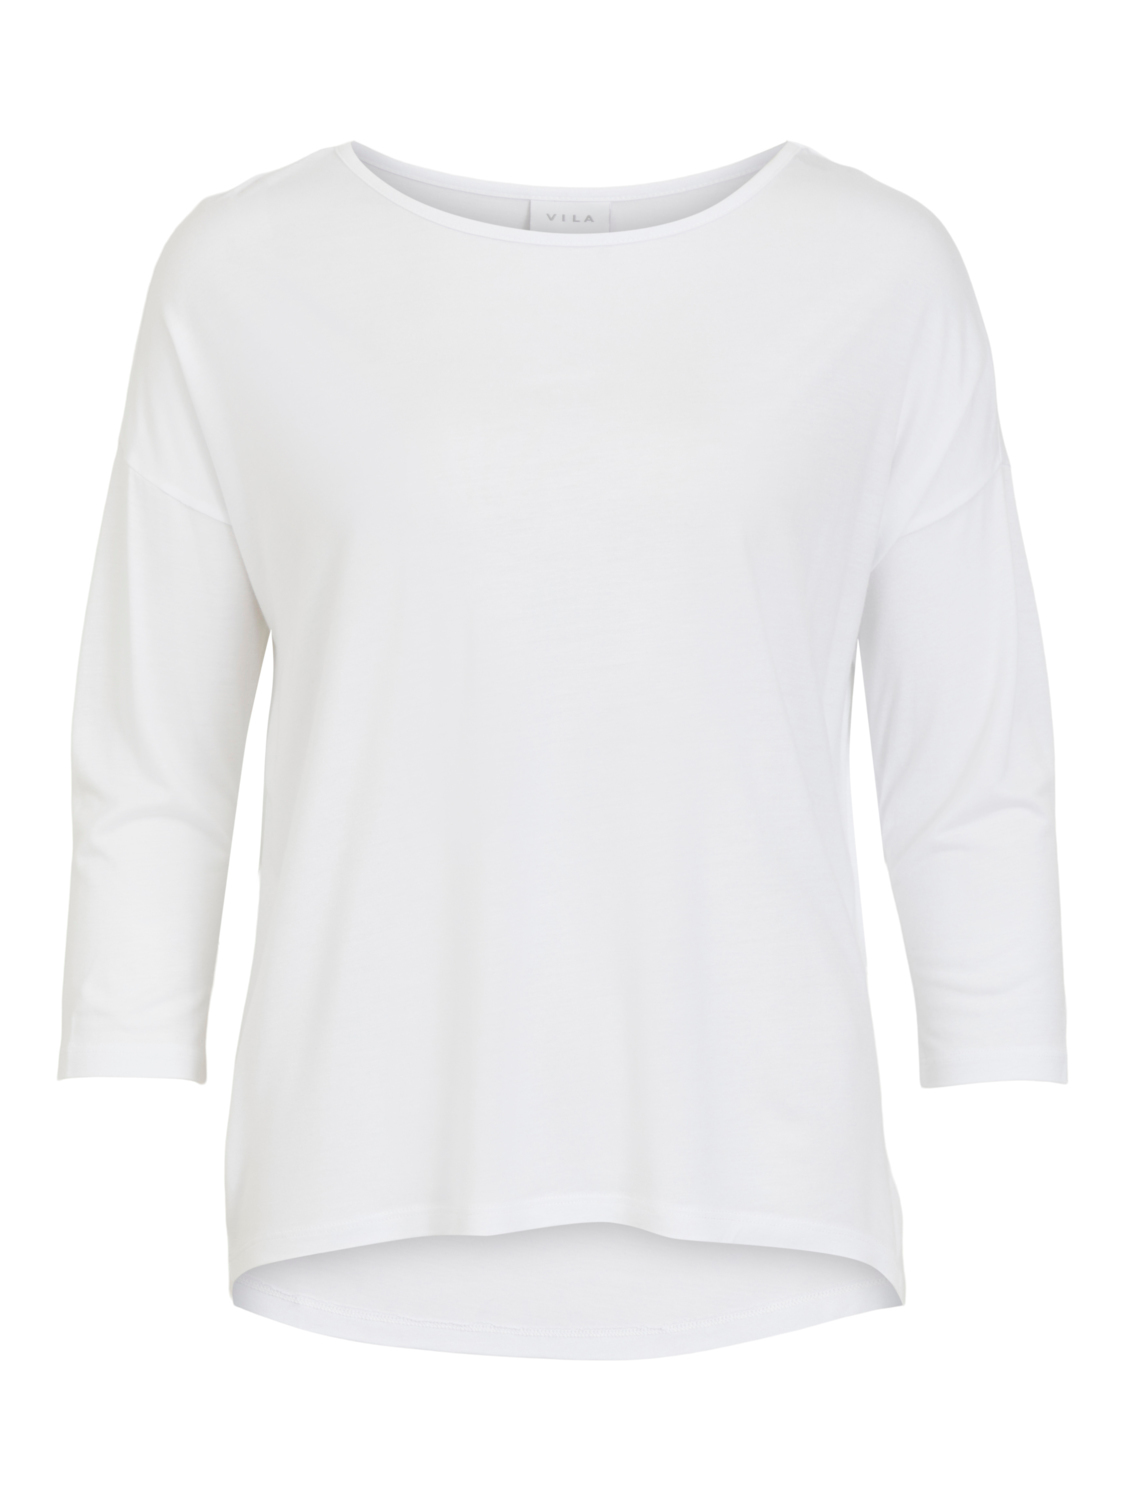 Abbigliamento Donna VILA Maglietta SCOOP in Bianco 